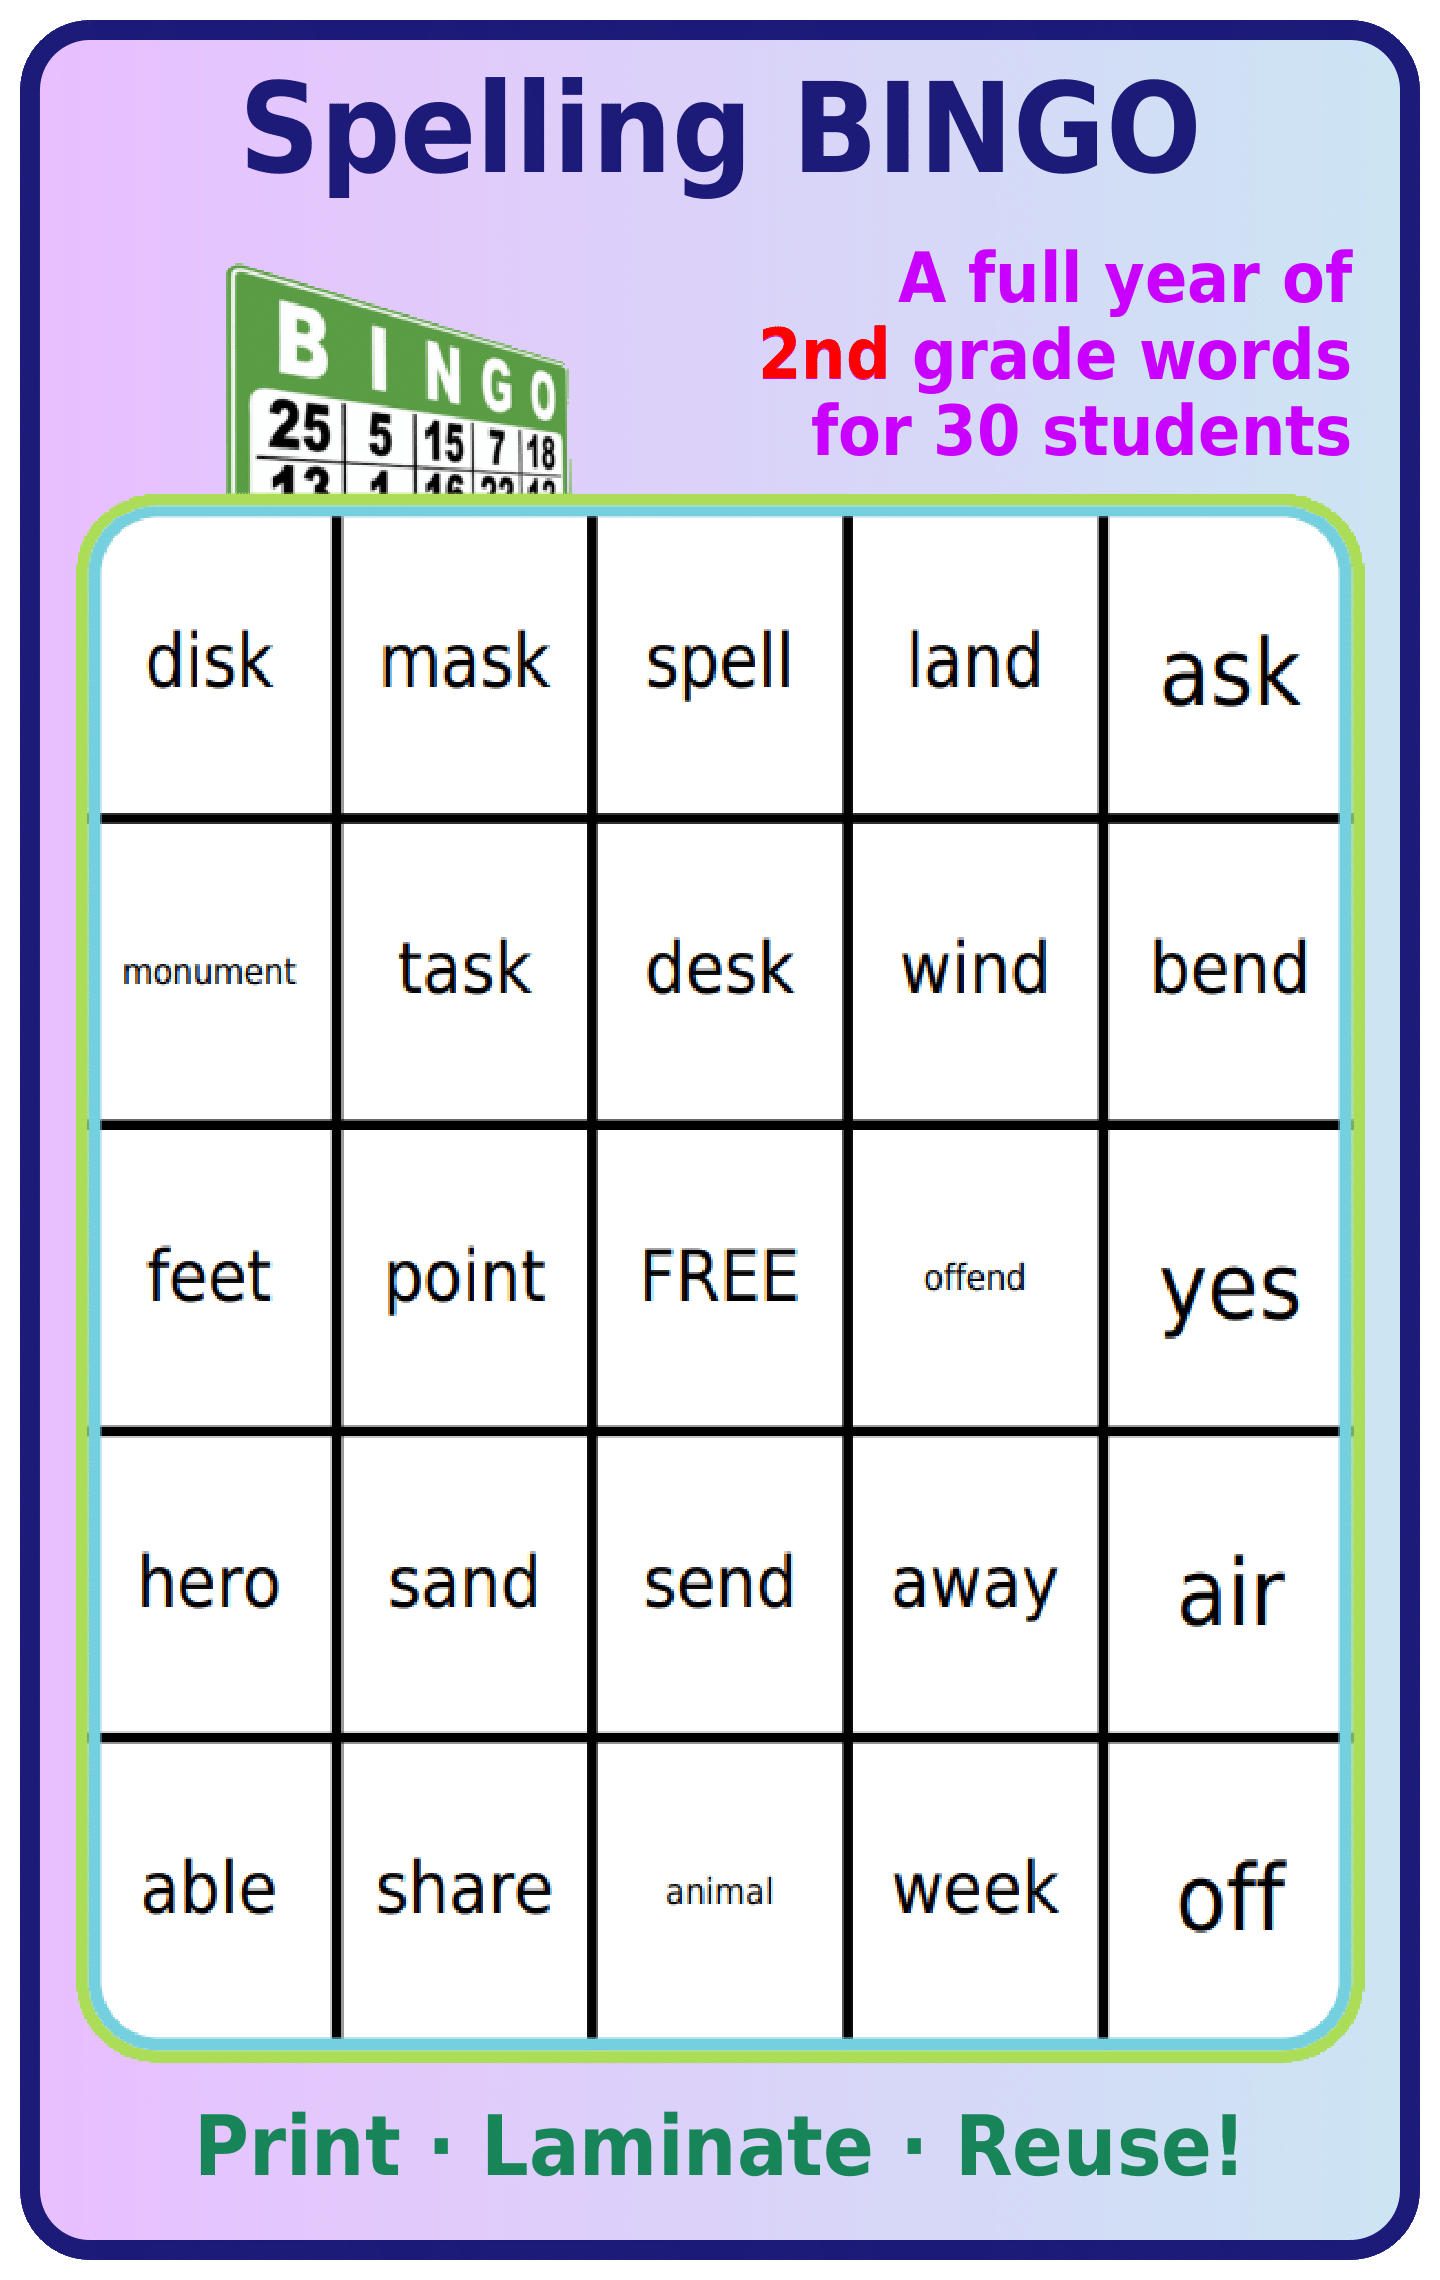 Bingo board with 2nd grade spelling words